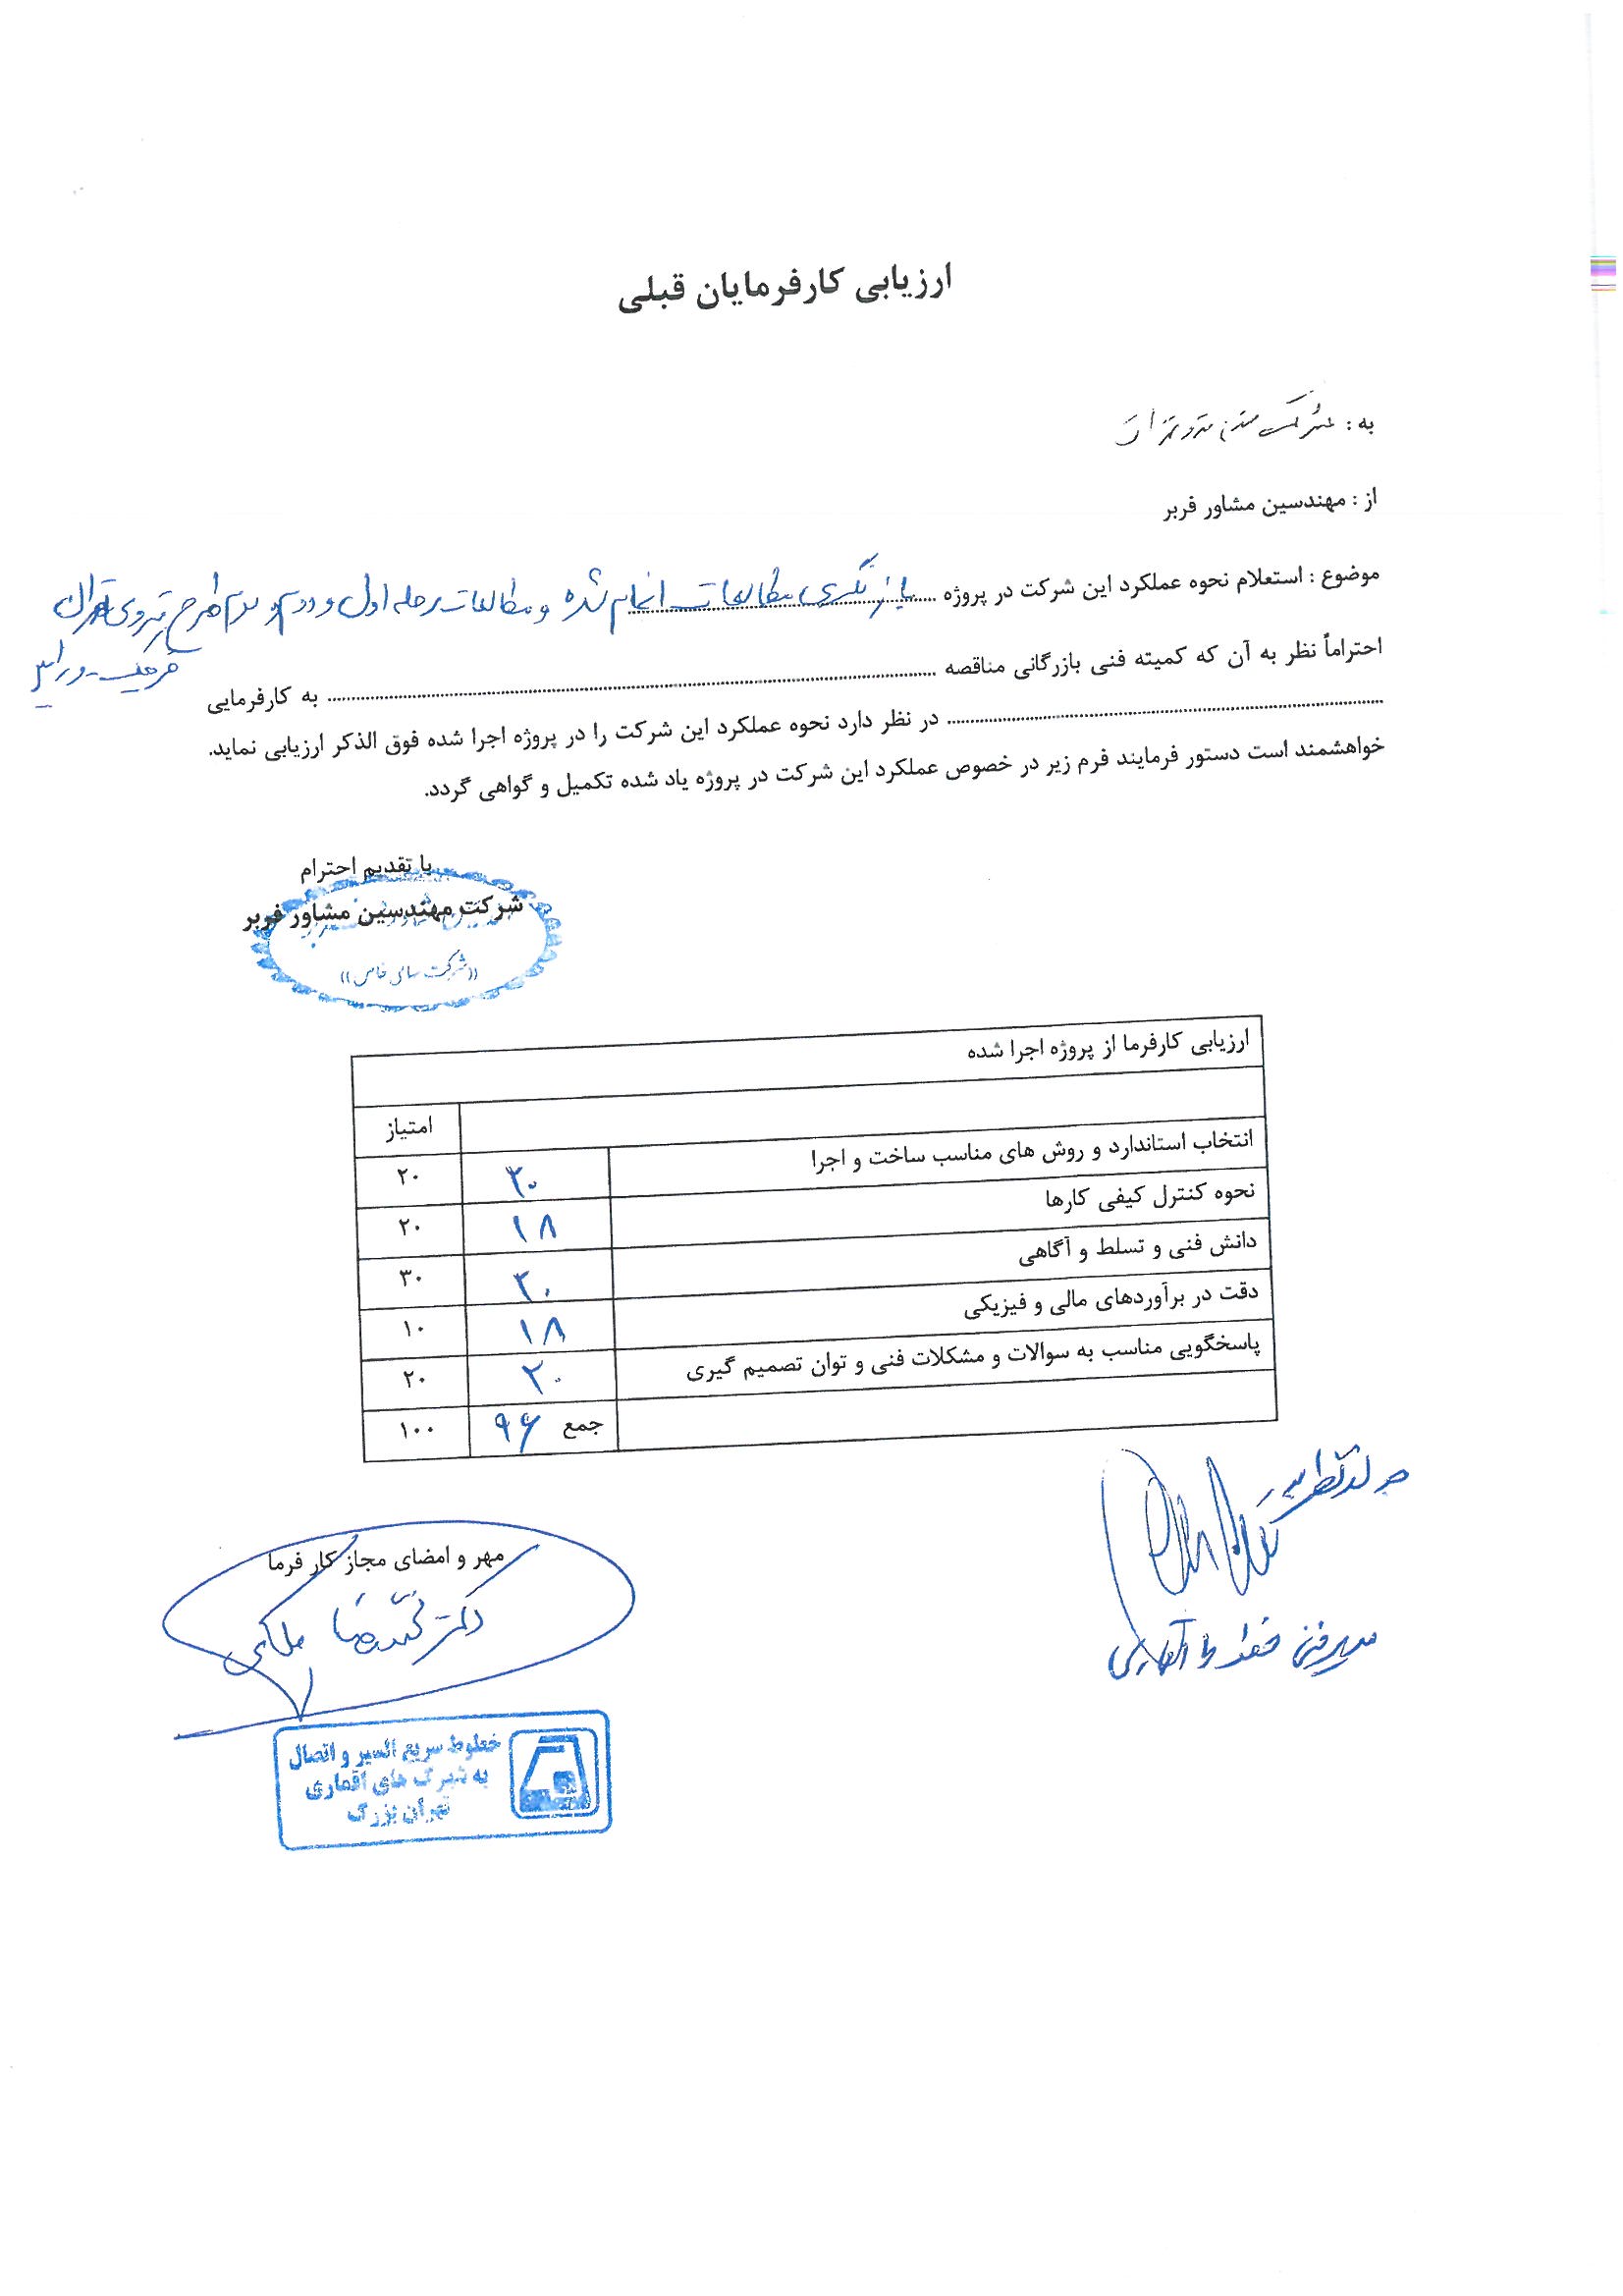 پروژه بازنگری مطالعات انجام شده و مطالعات مراحل اول و دوم طرح متروی تهران - قرچک - ورامین - نتیجه ارزیابی توسط شرکت راه آهن شهری تهران و حومه (مترو)